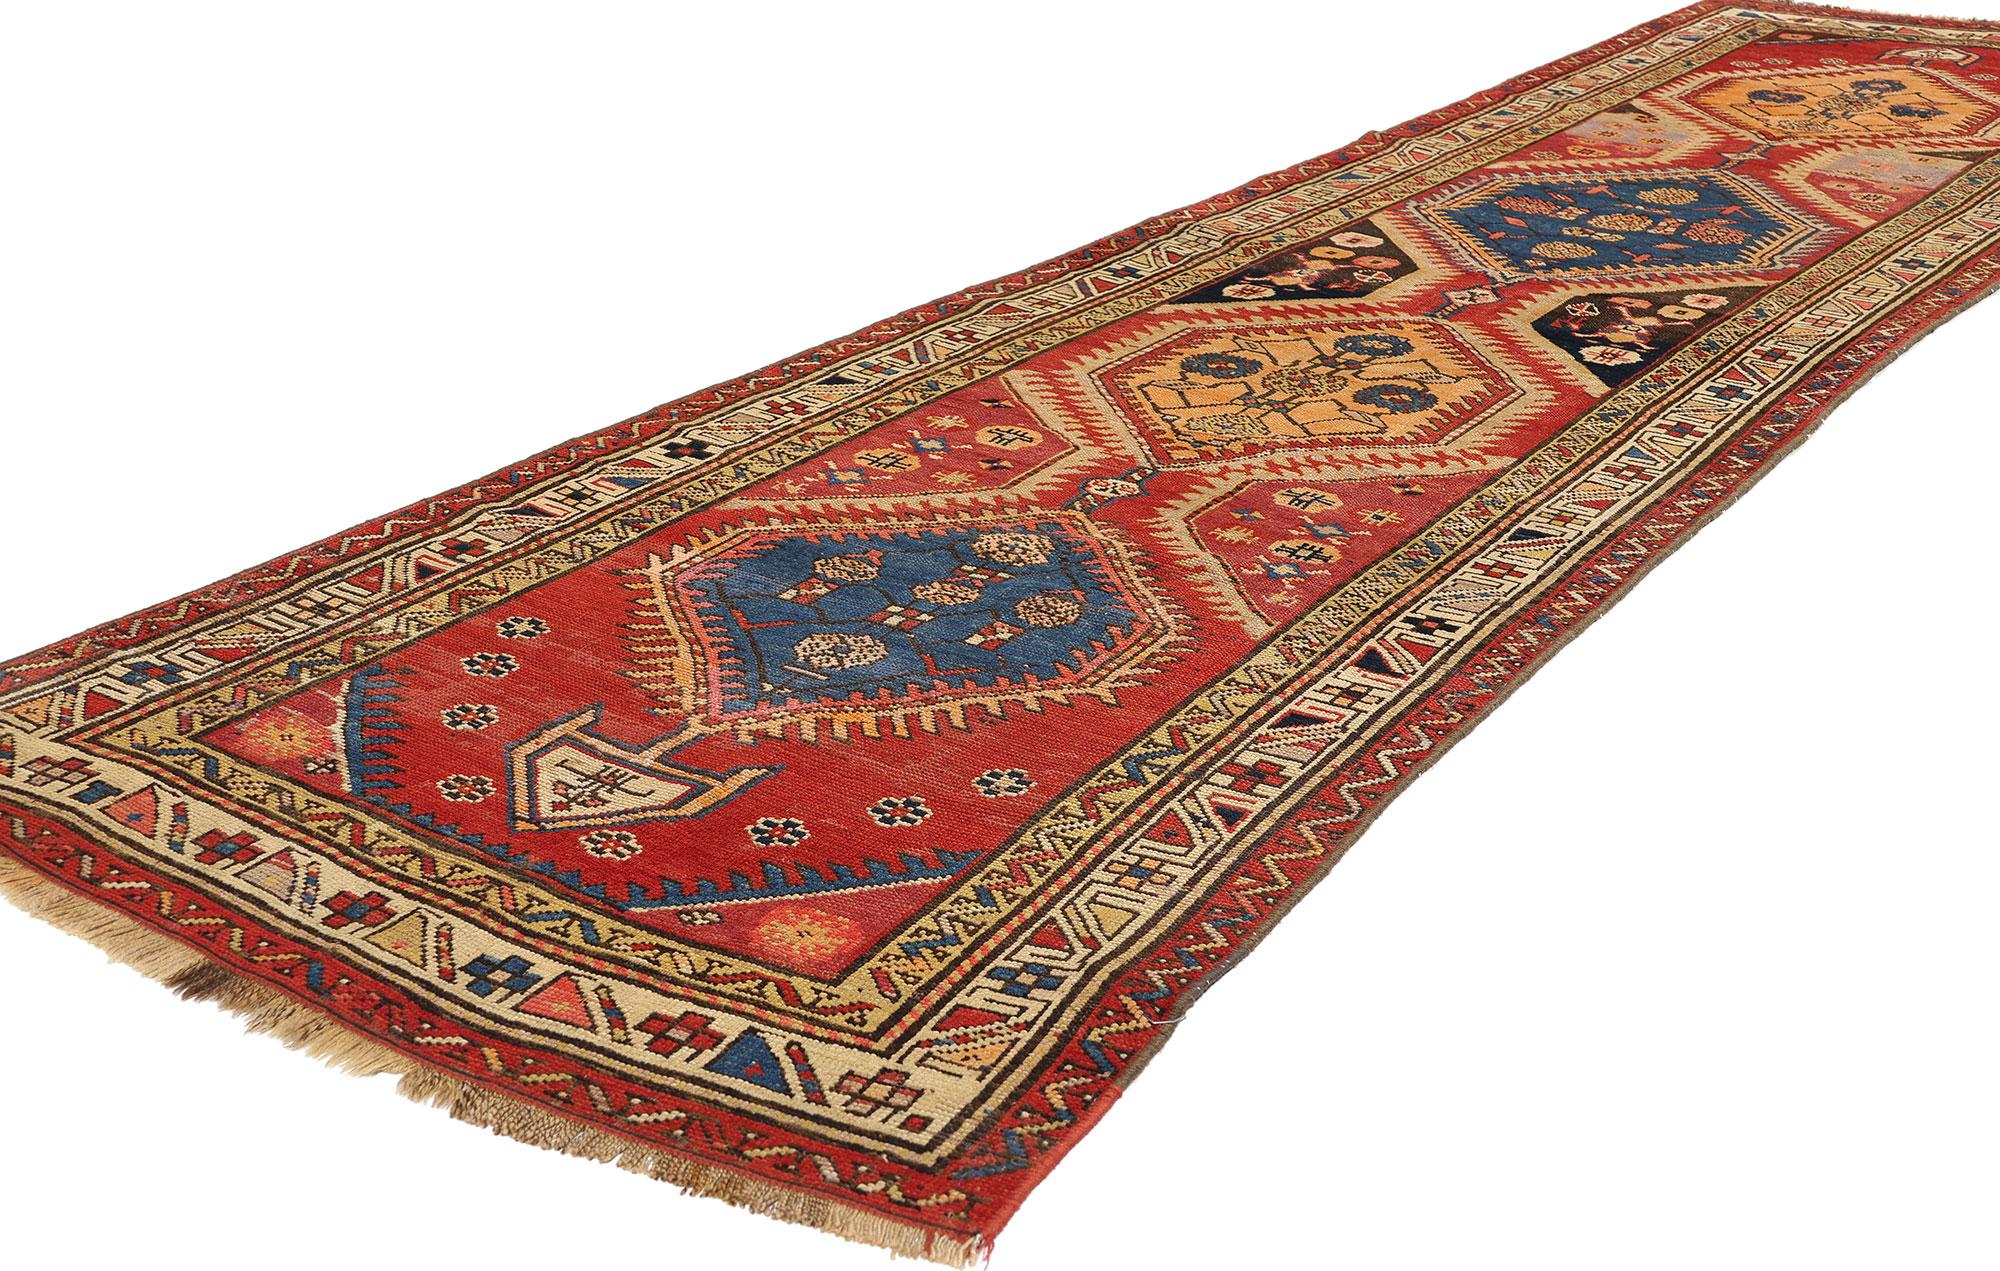 72401 Antique Caucasian Tribal Shirvan Rug Runner, 03'01 x 11'08. Les tapis caucasiens Shirvan sont des tapis traditionnels originaires de la région de Shirvan, dans les montagnes du Caucase, caractérisés par des couleurs vives, des motifs